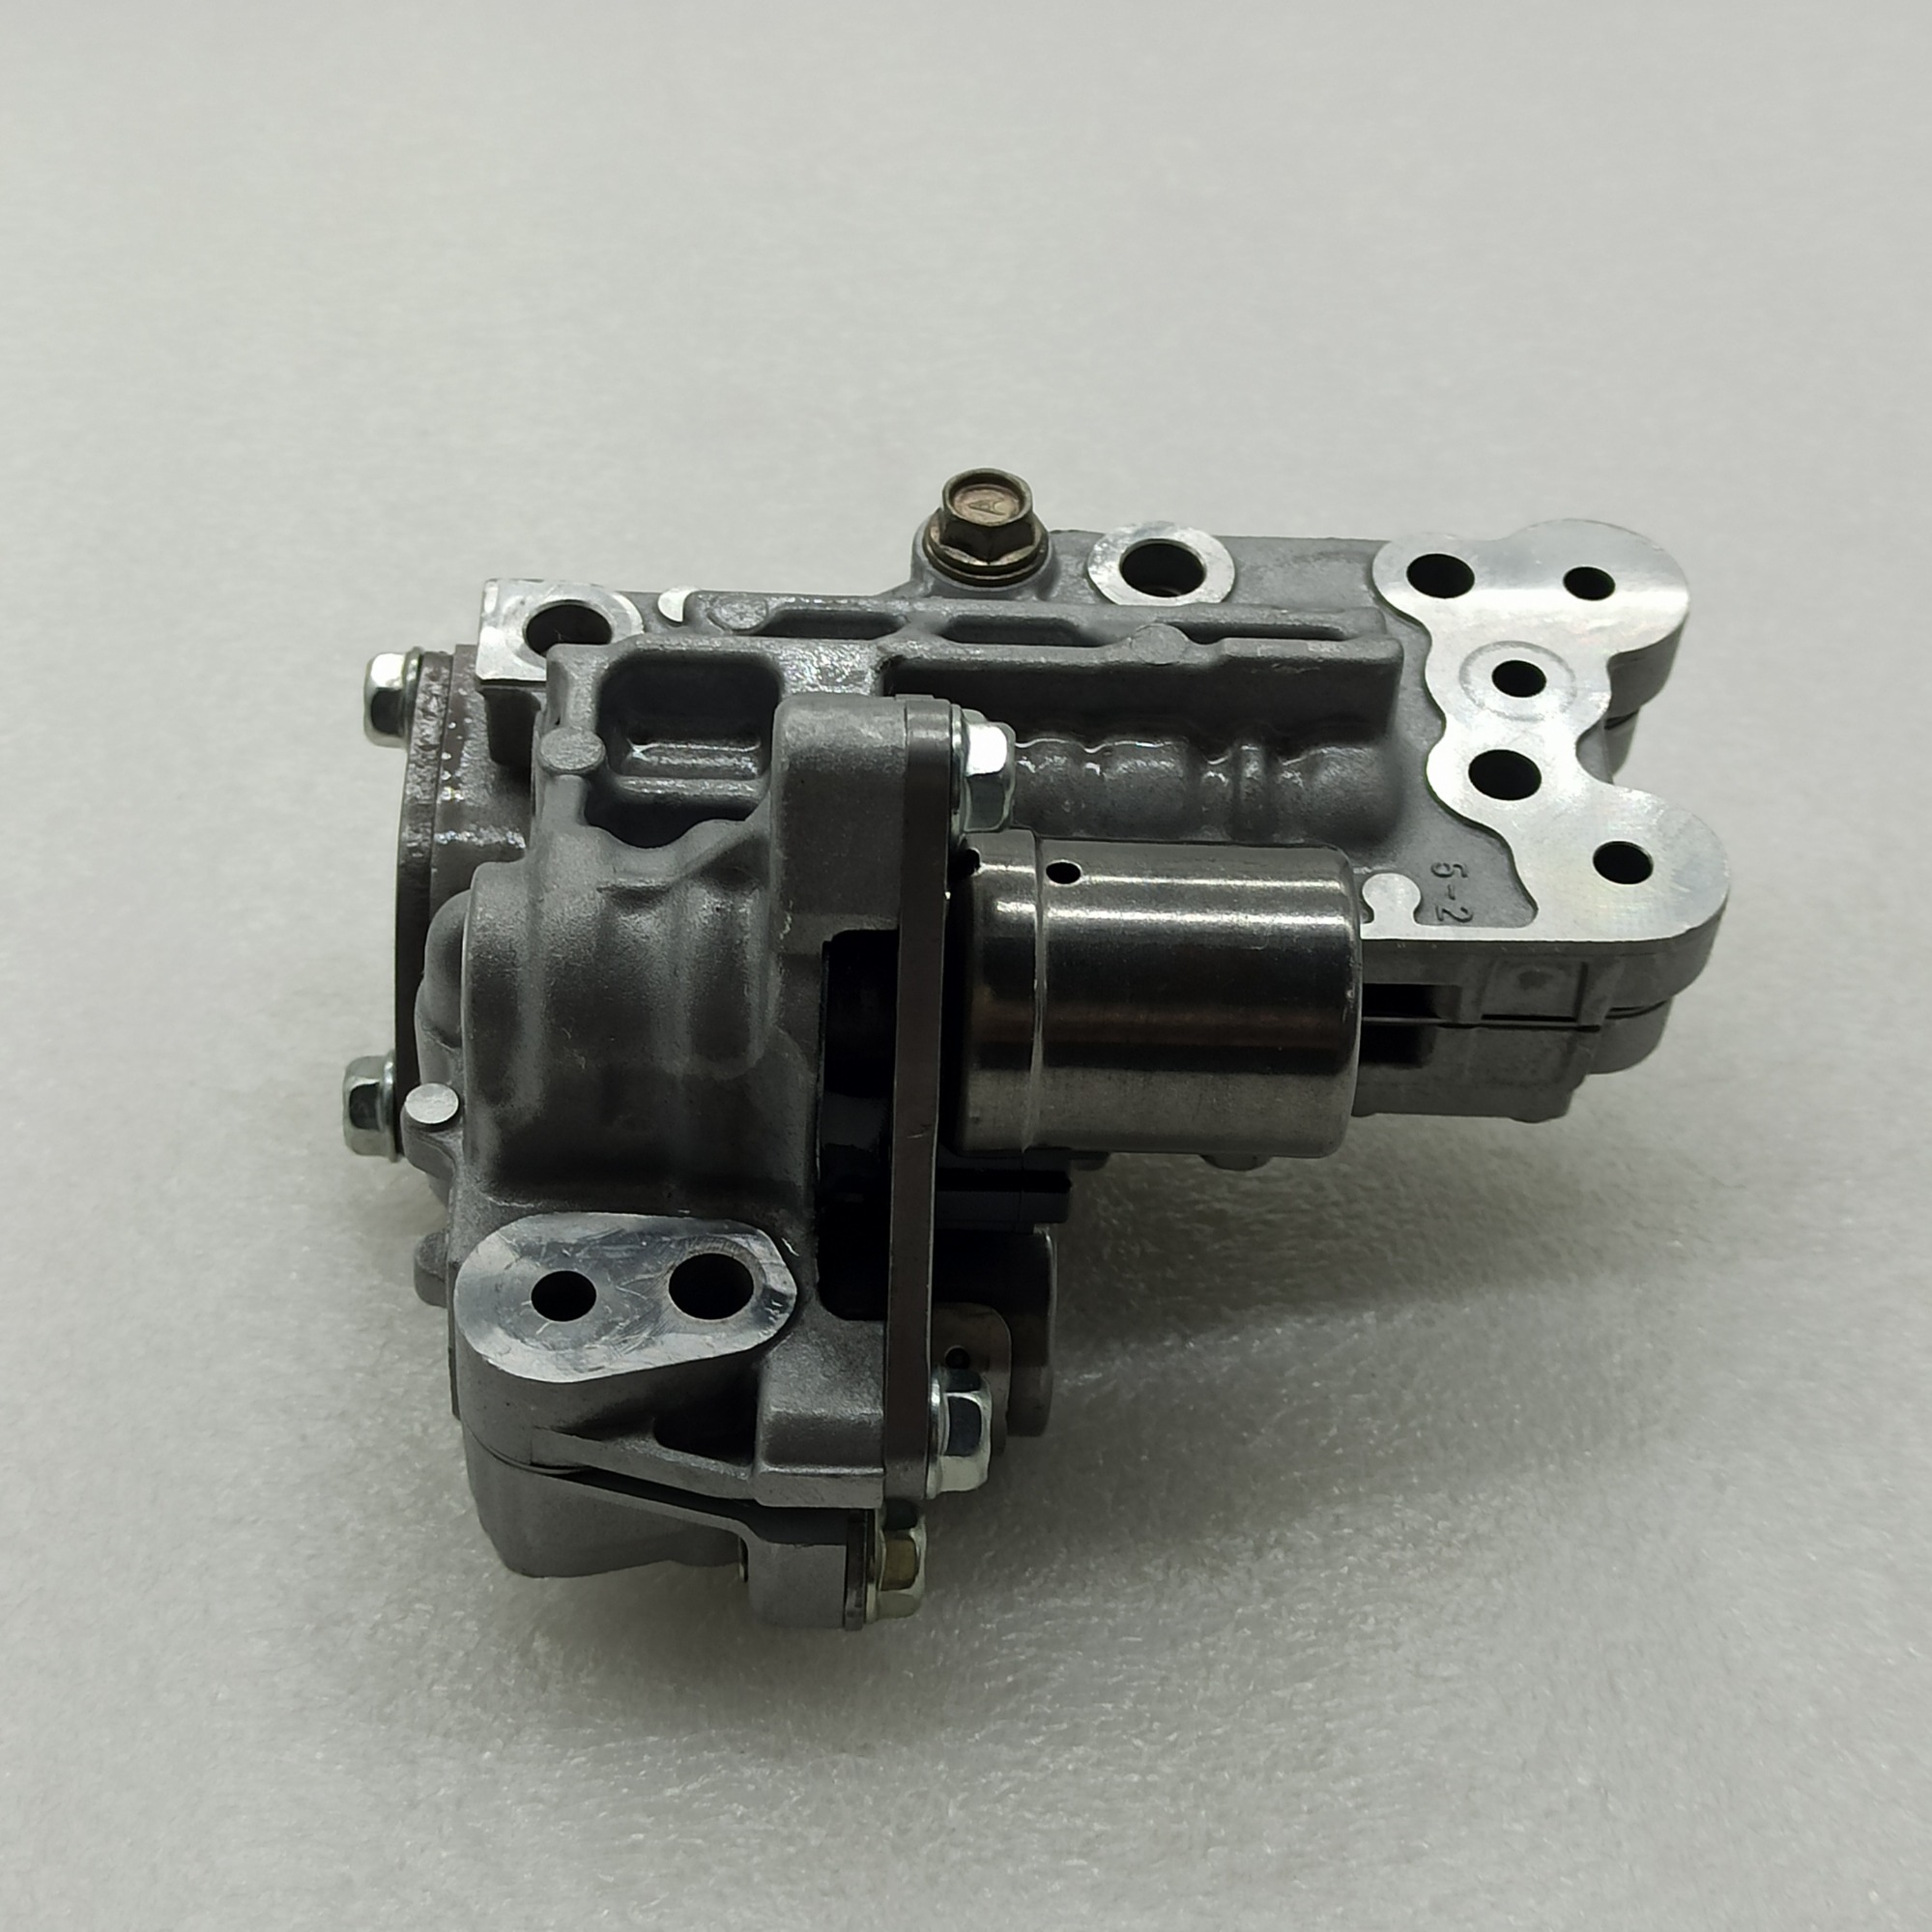 FNR5-0003-U1 small valve body U1 Transpeed FNR5 FS5A-EL AT transmission small valve body solenoid 5Speed apply to MAZDA FS5AEL FNR5